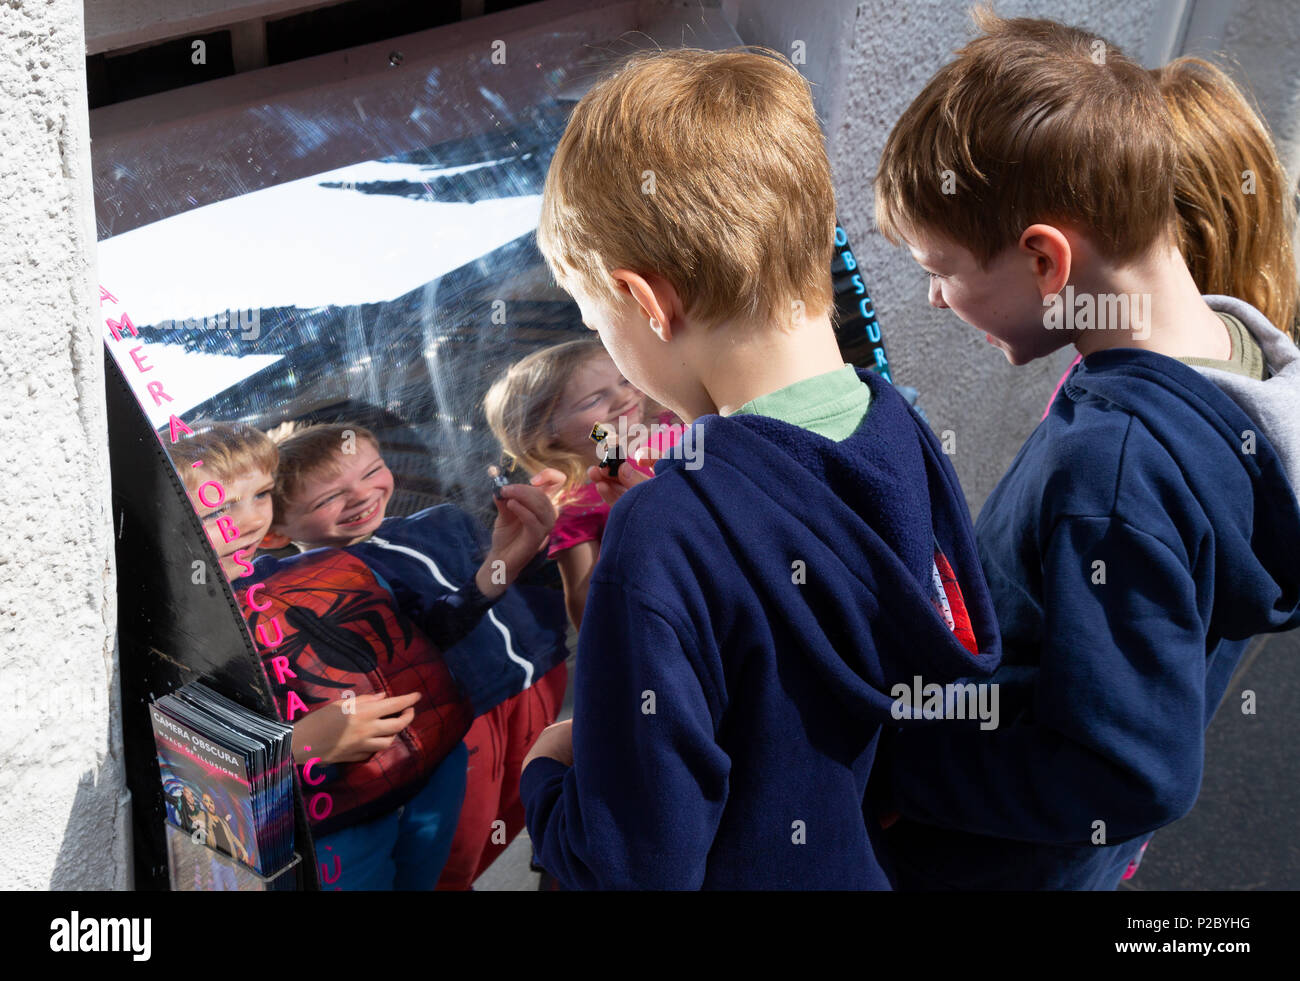 Glückliche Kinder Spaß mit der Reflexion in einem Spiegel Verzerrung, Edinburgh. Schottland Großbritannien Stockfoto